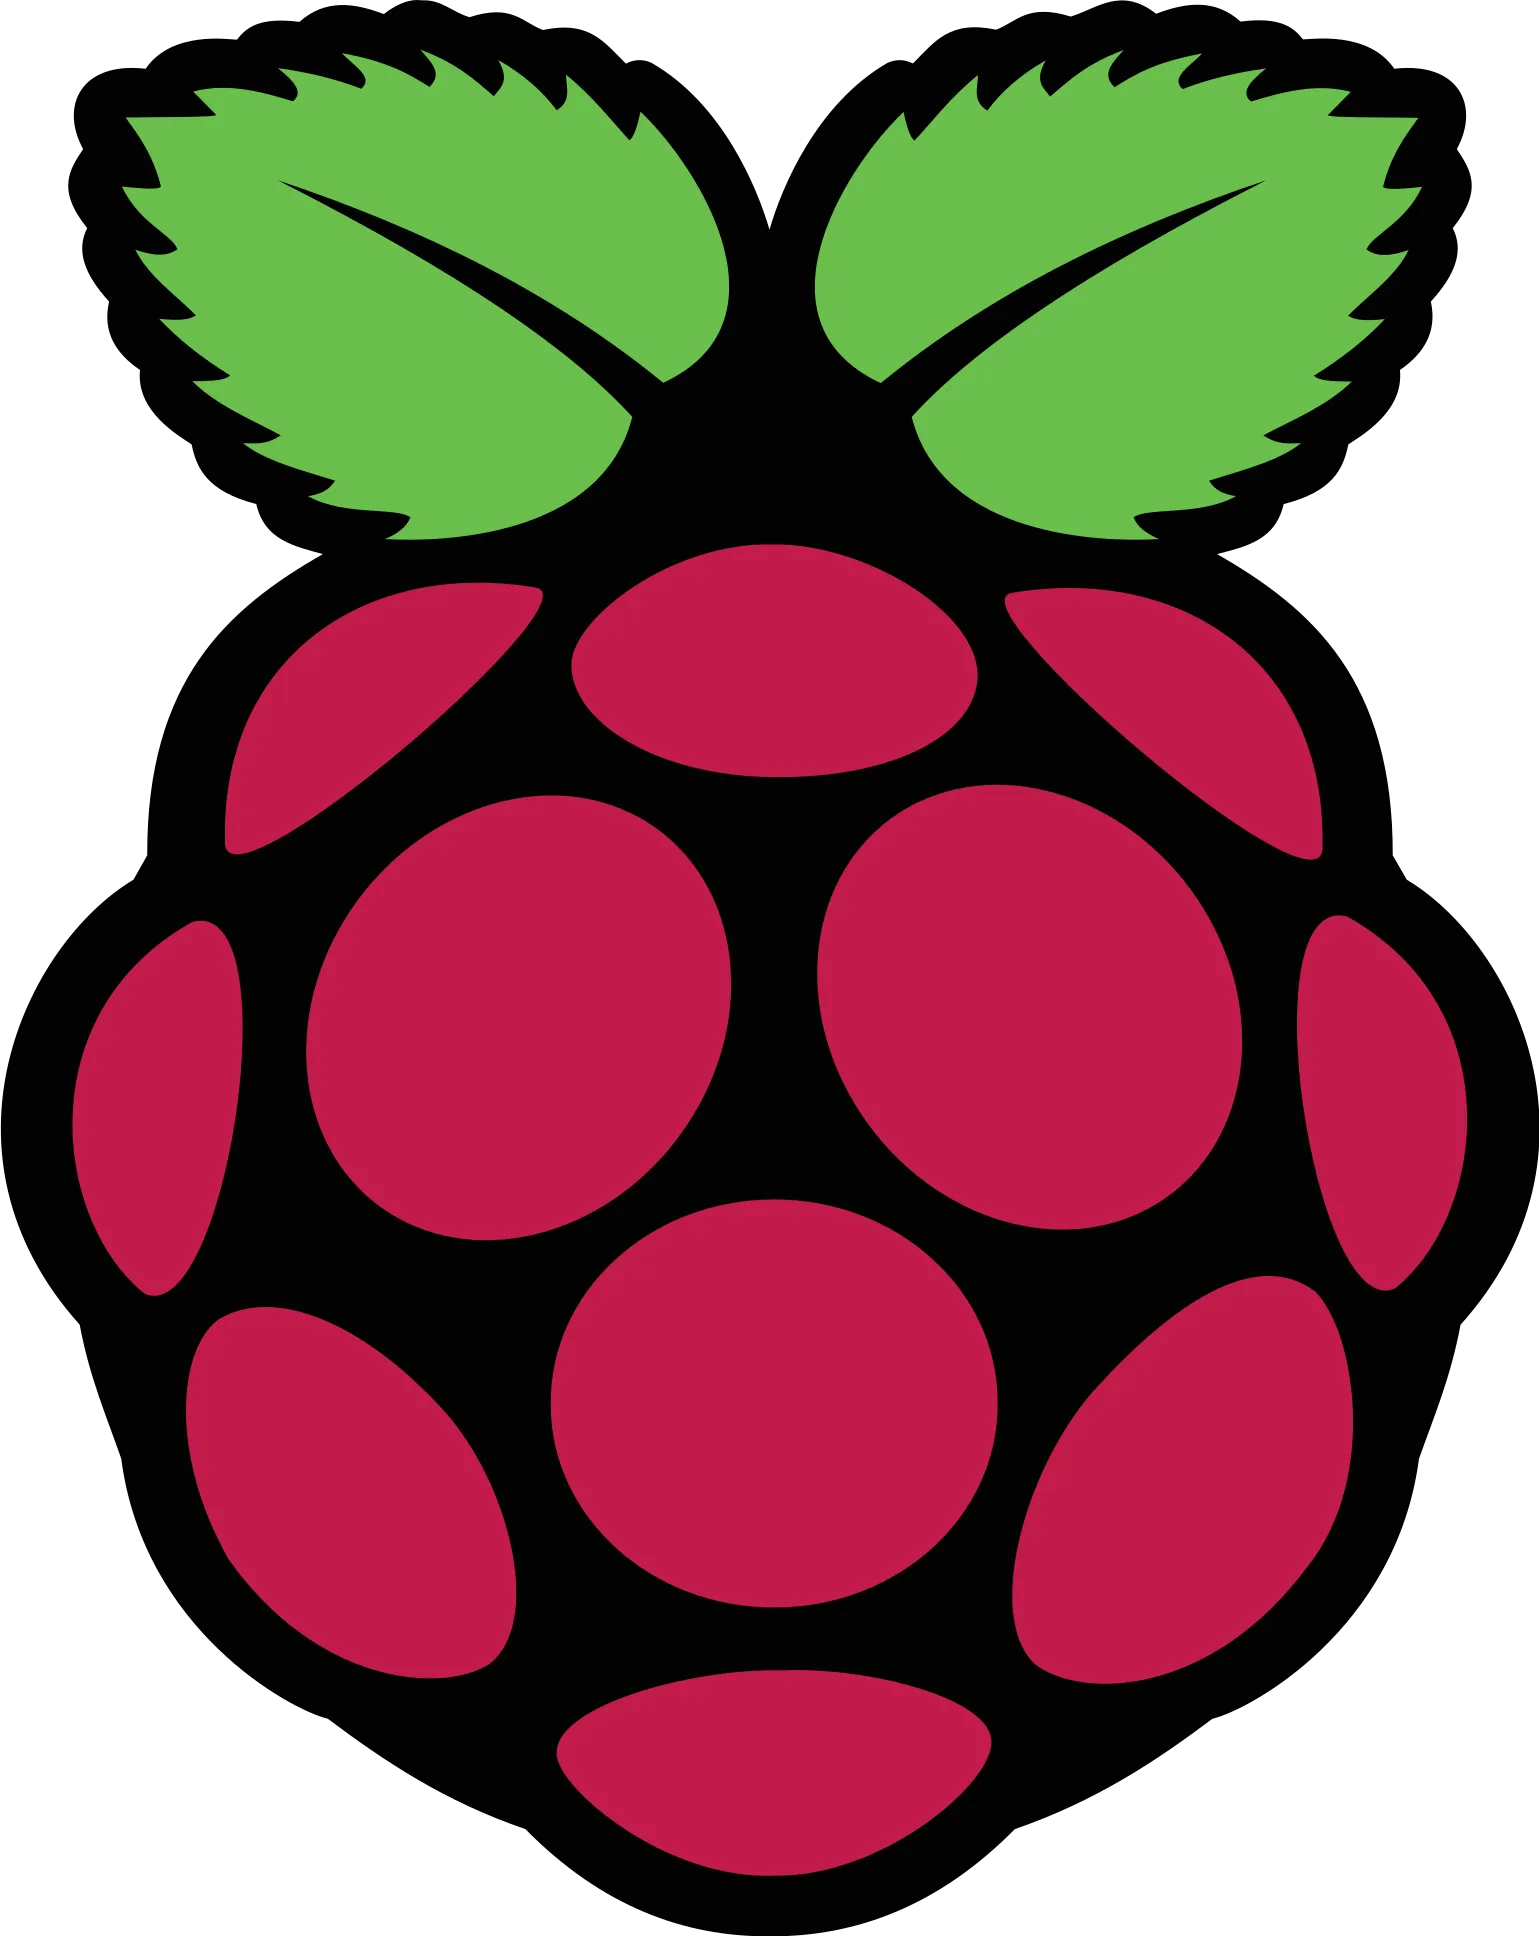  Raspberry PI Промокоды